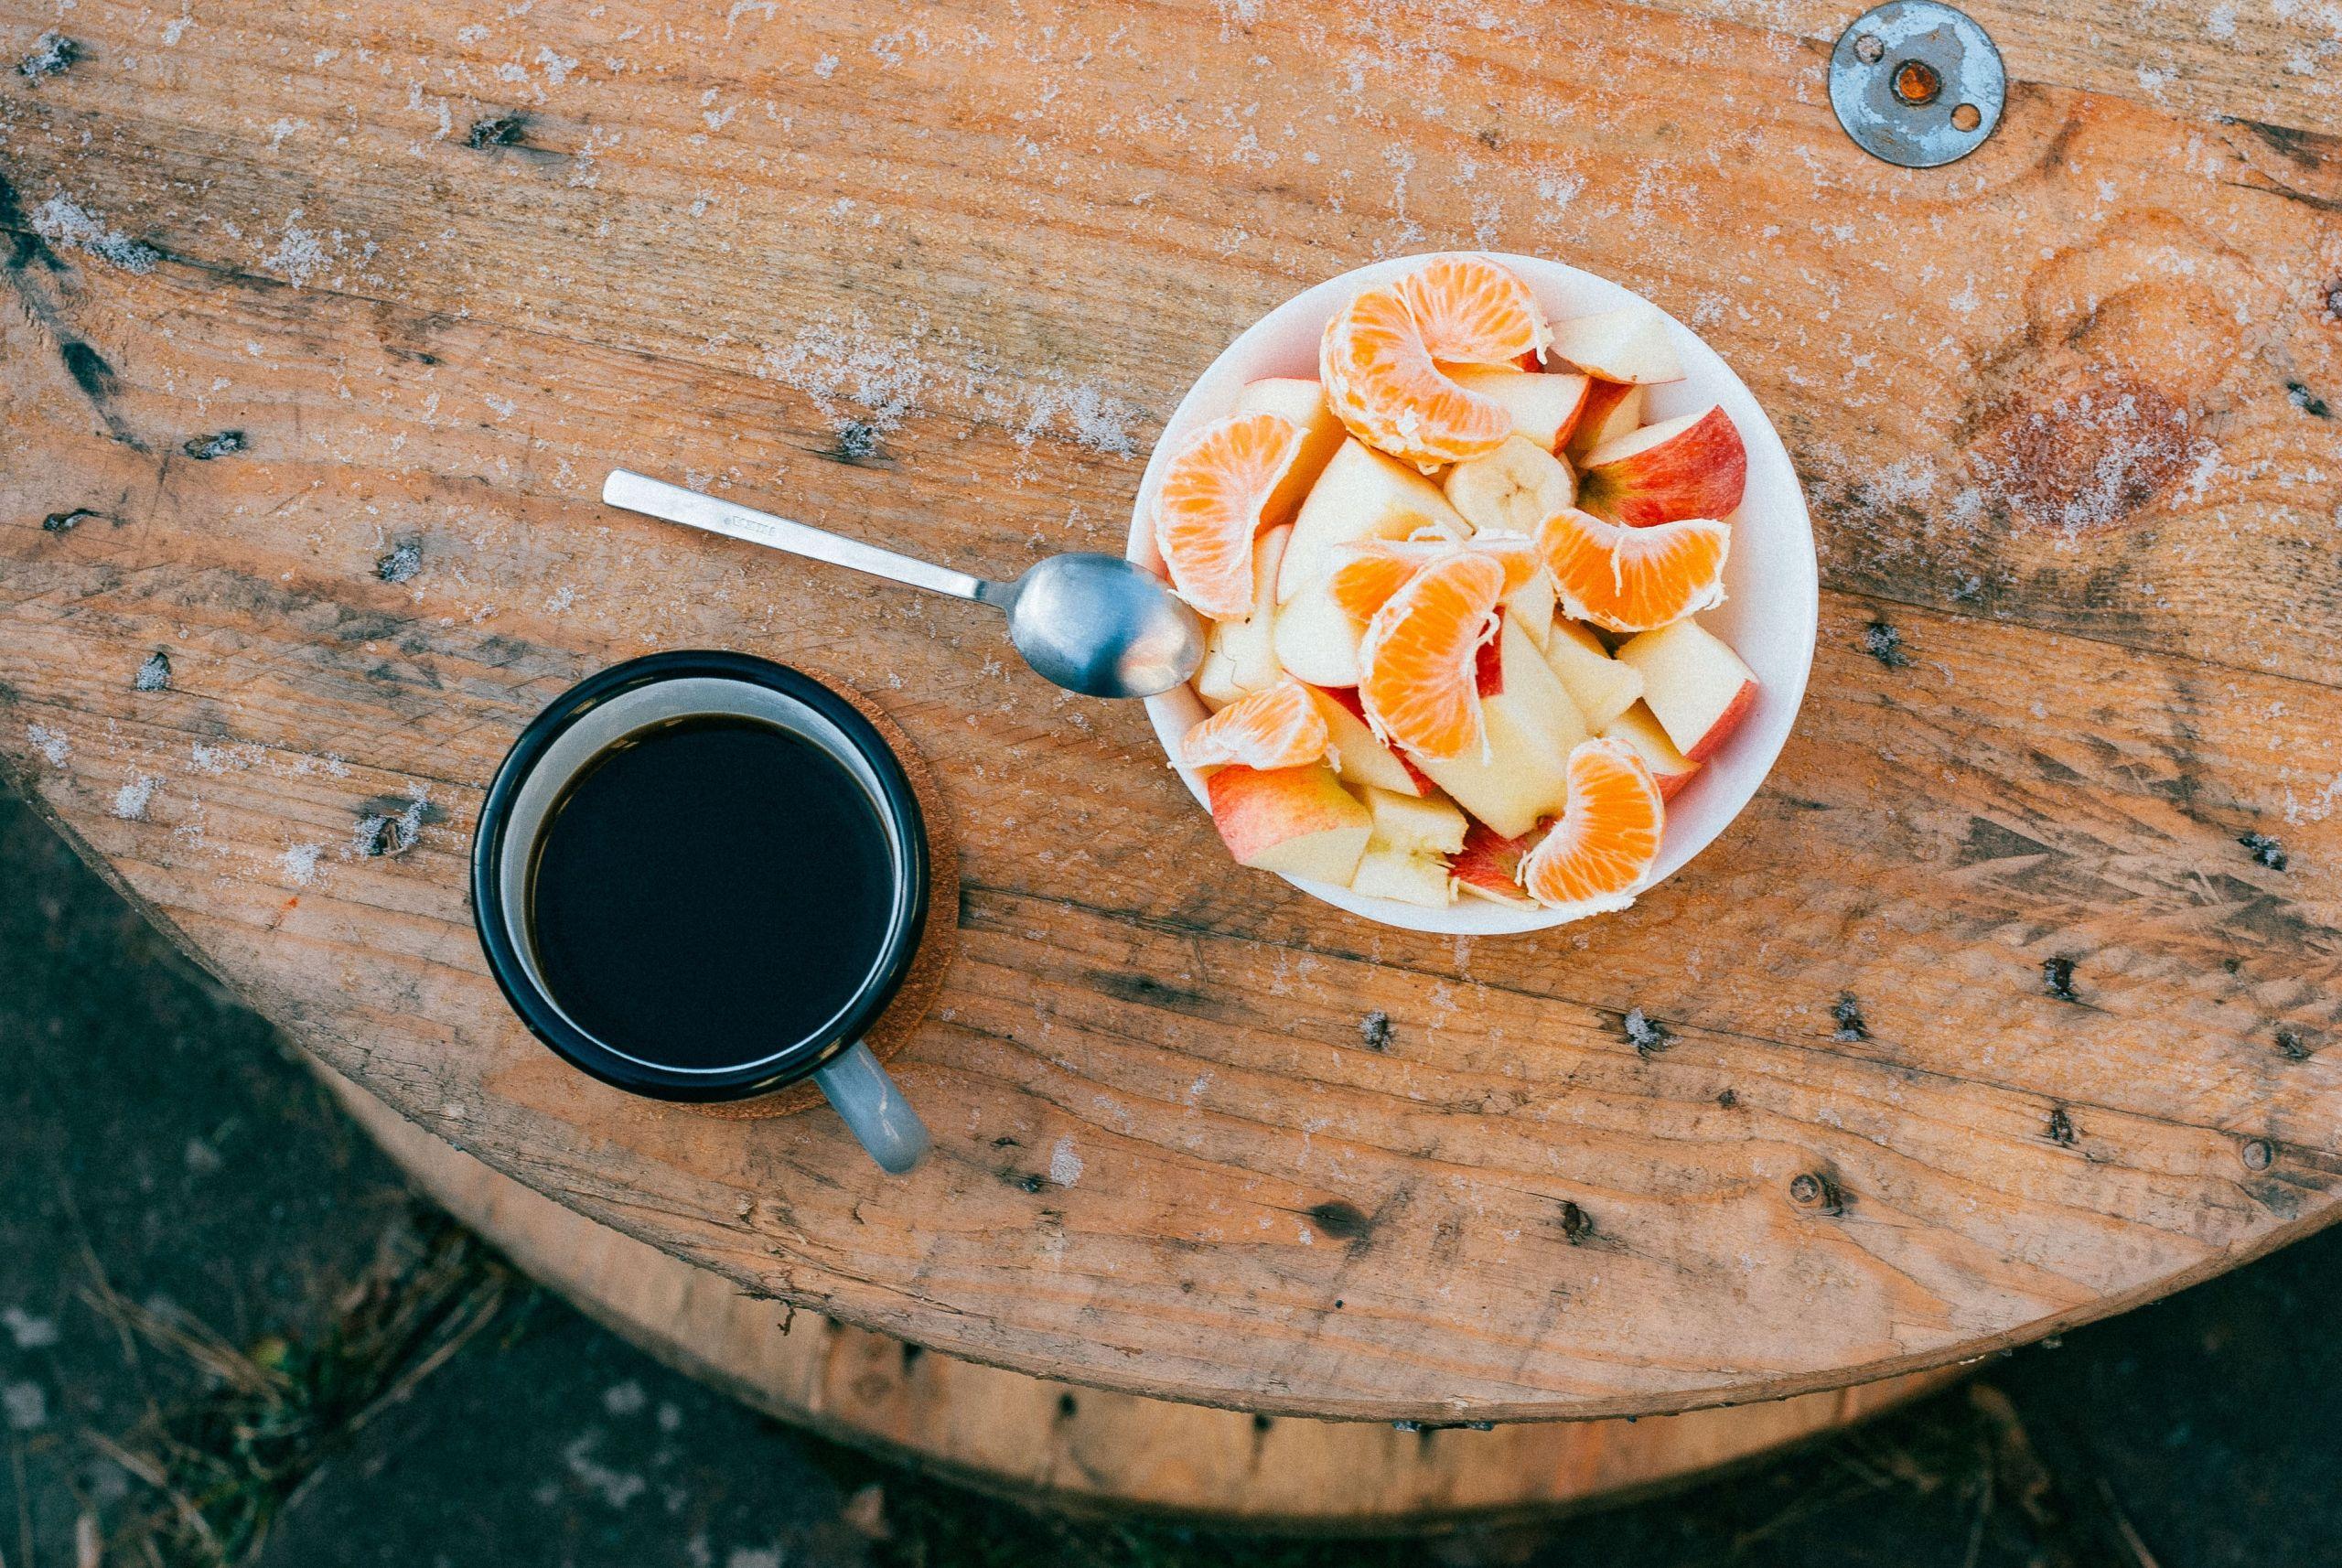 Las naranjas y mandarinas comparten temporada con frutas como la manzana o la pera, ayudándonos a cuidarnos un poco más cuando el frío acecha.Fuente: Unplash